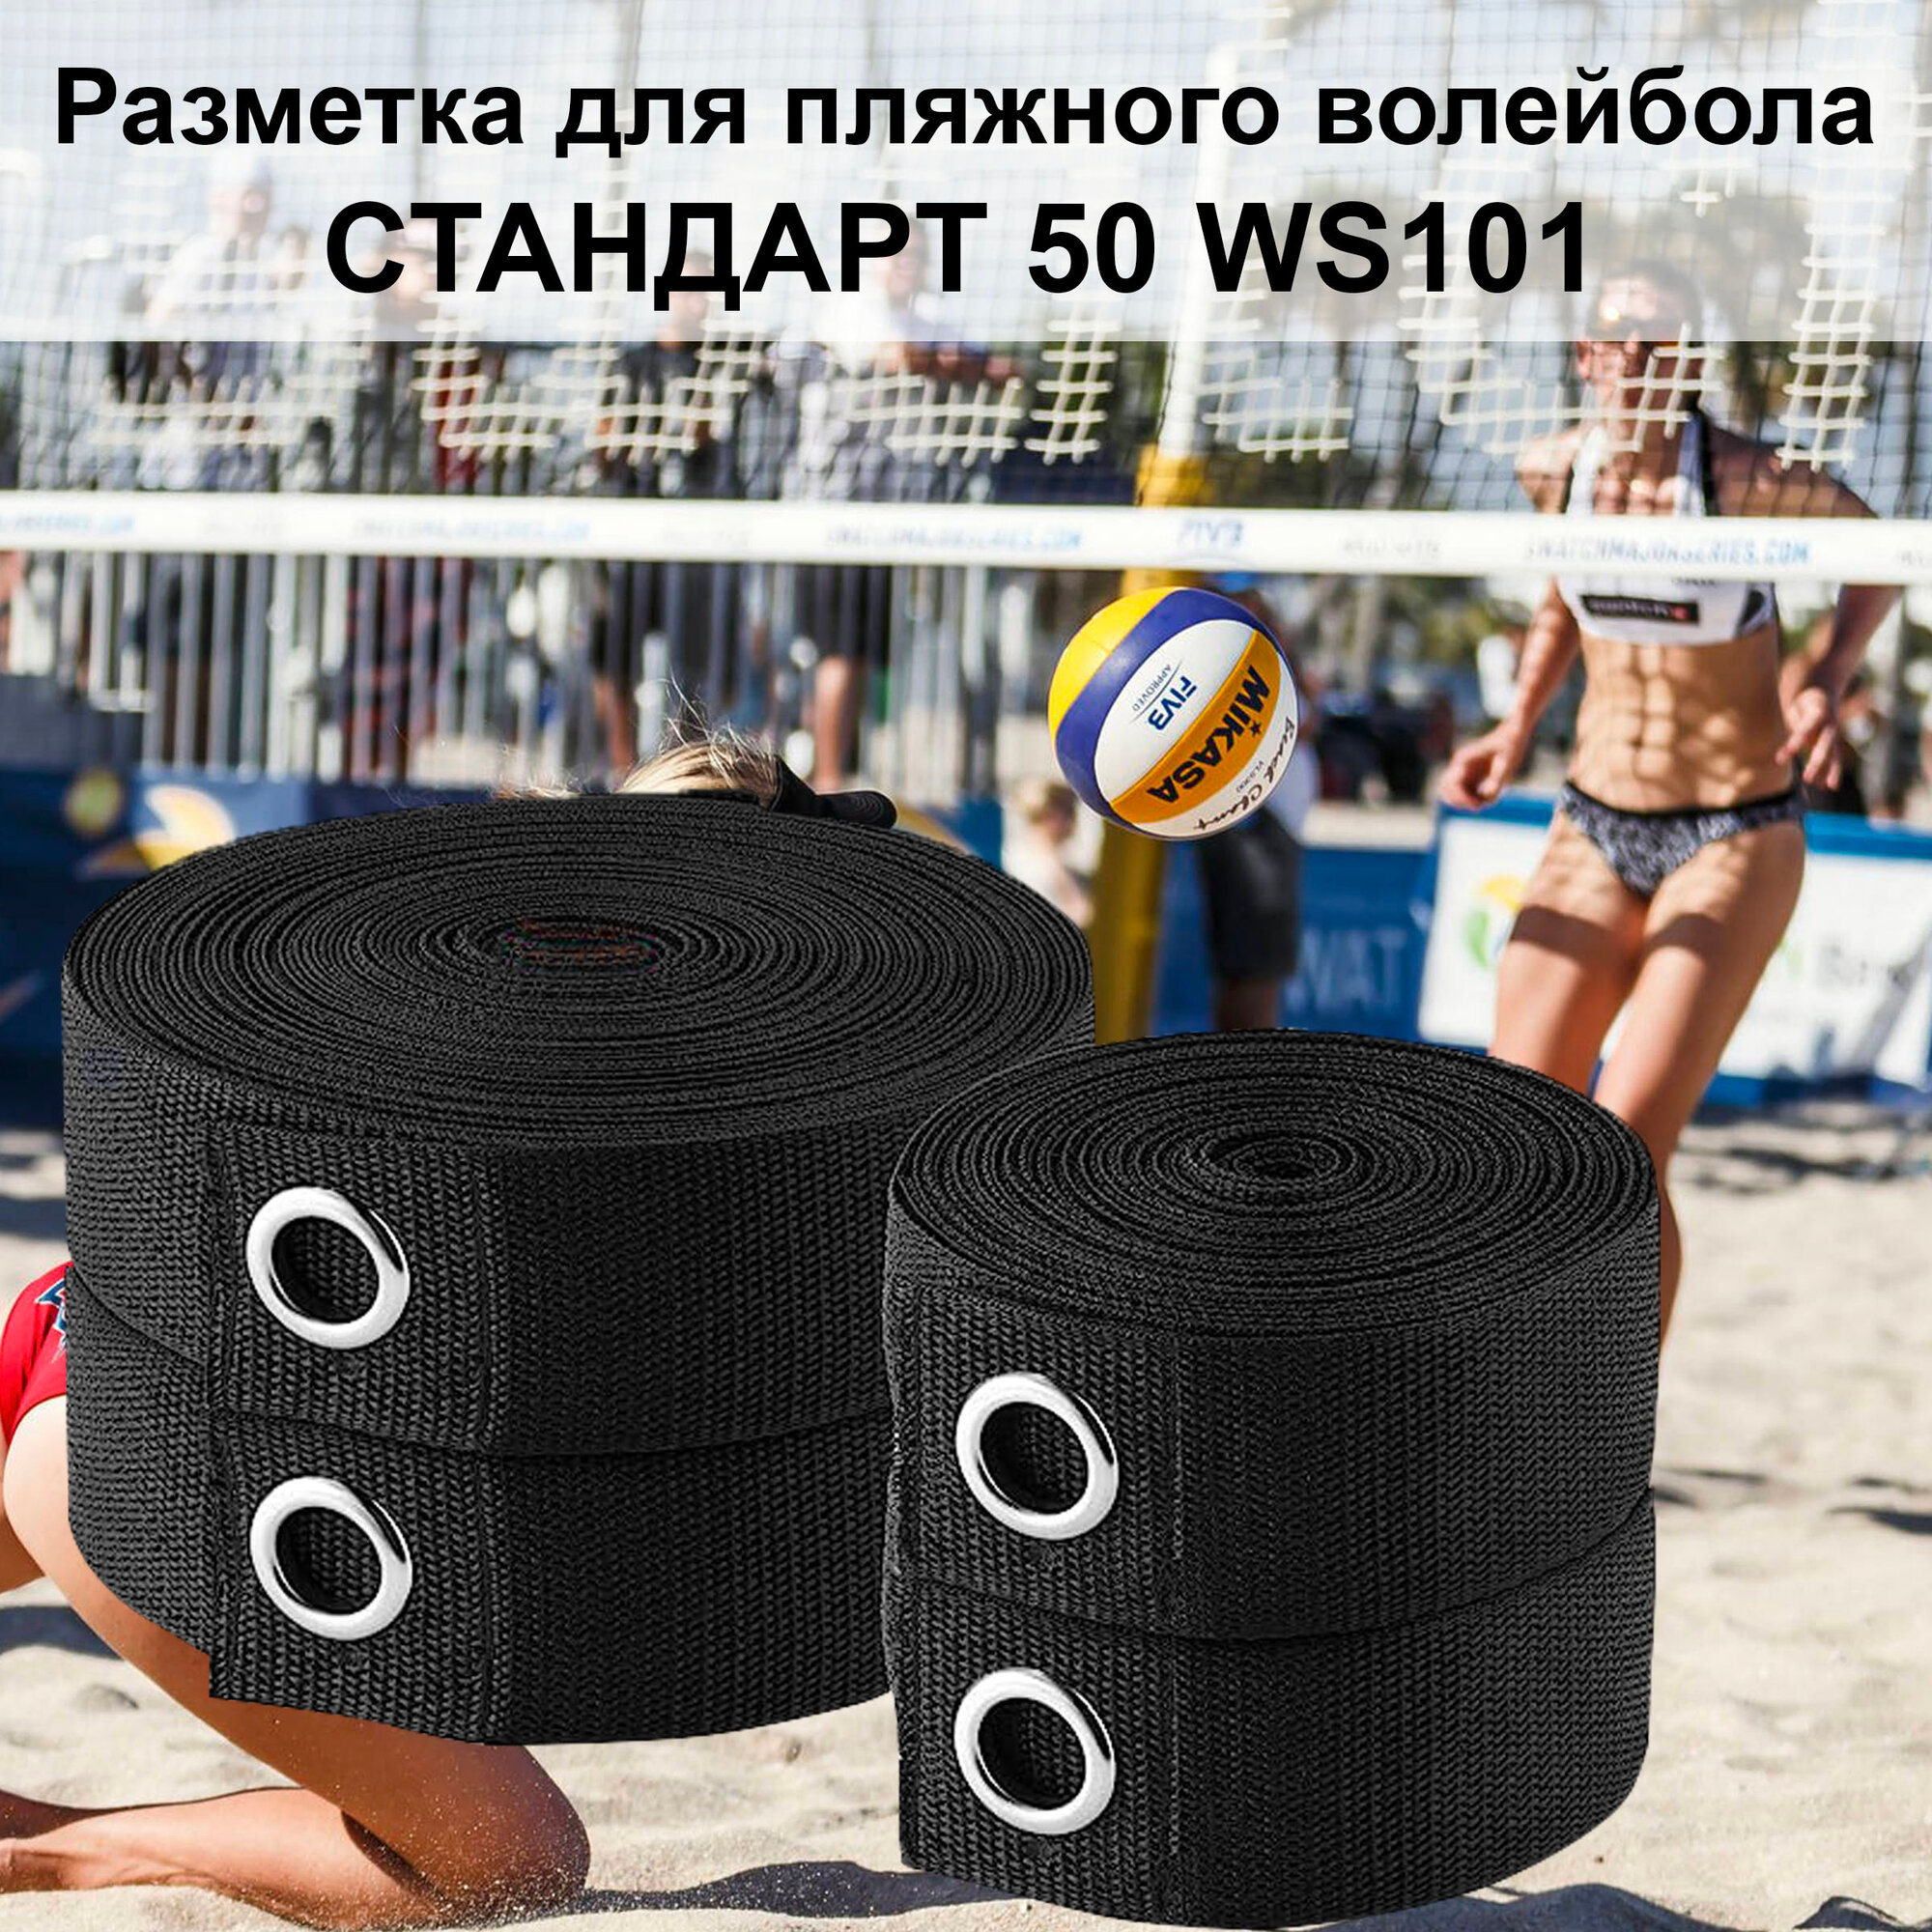 Разметка для пляжного волейбола СТАНДАРТ-50 WS101 черная